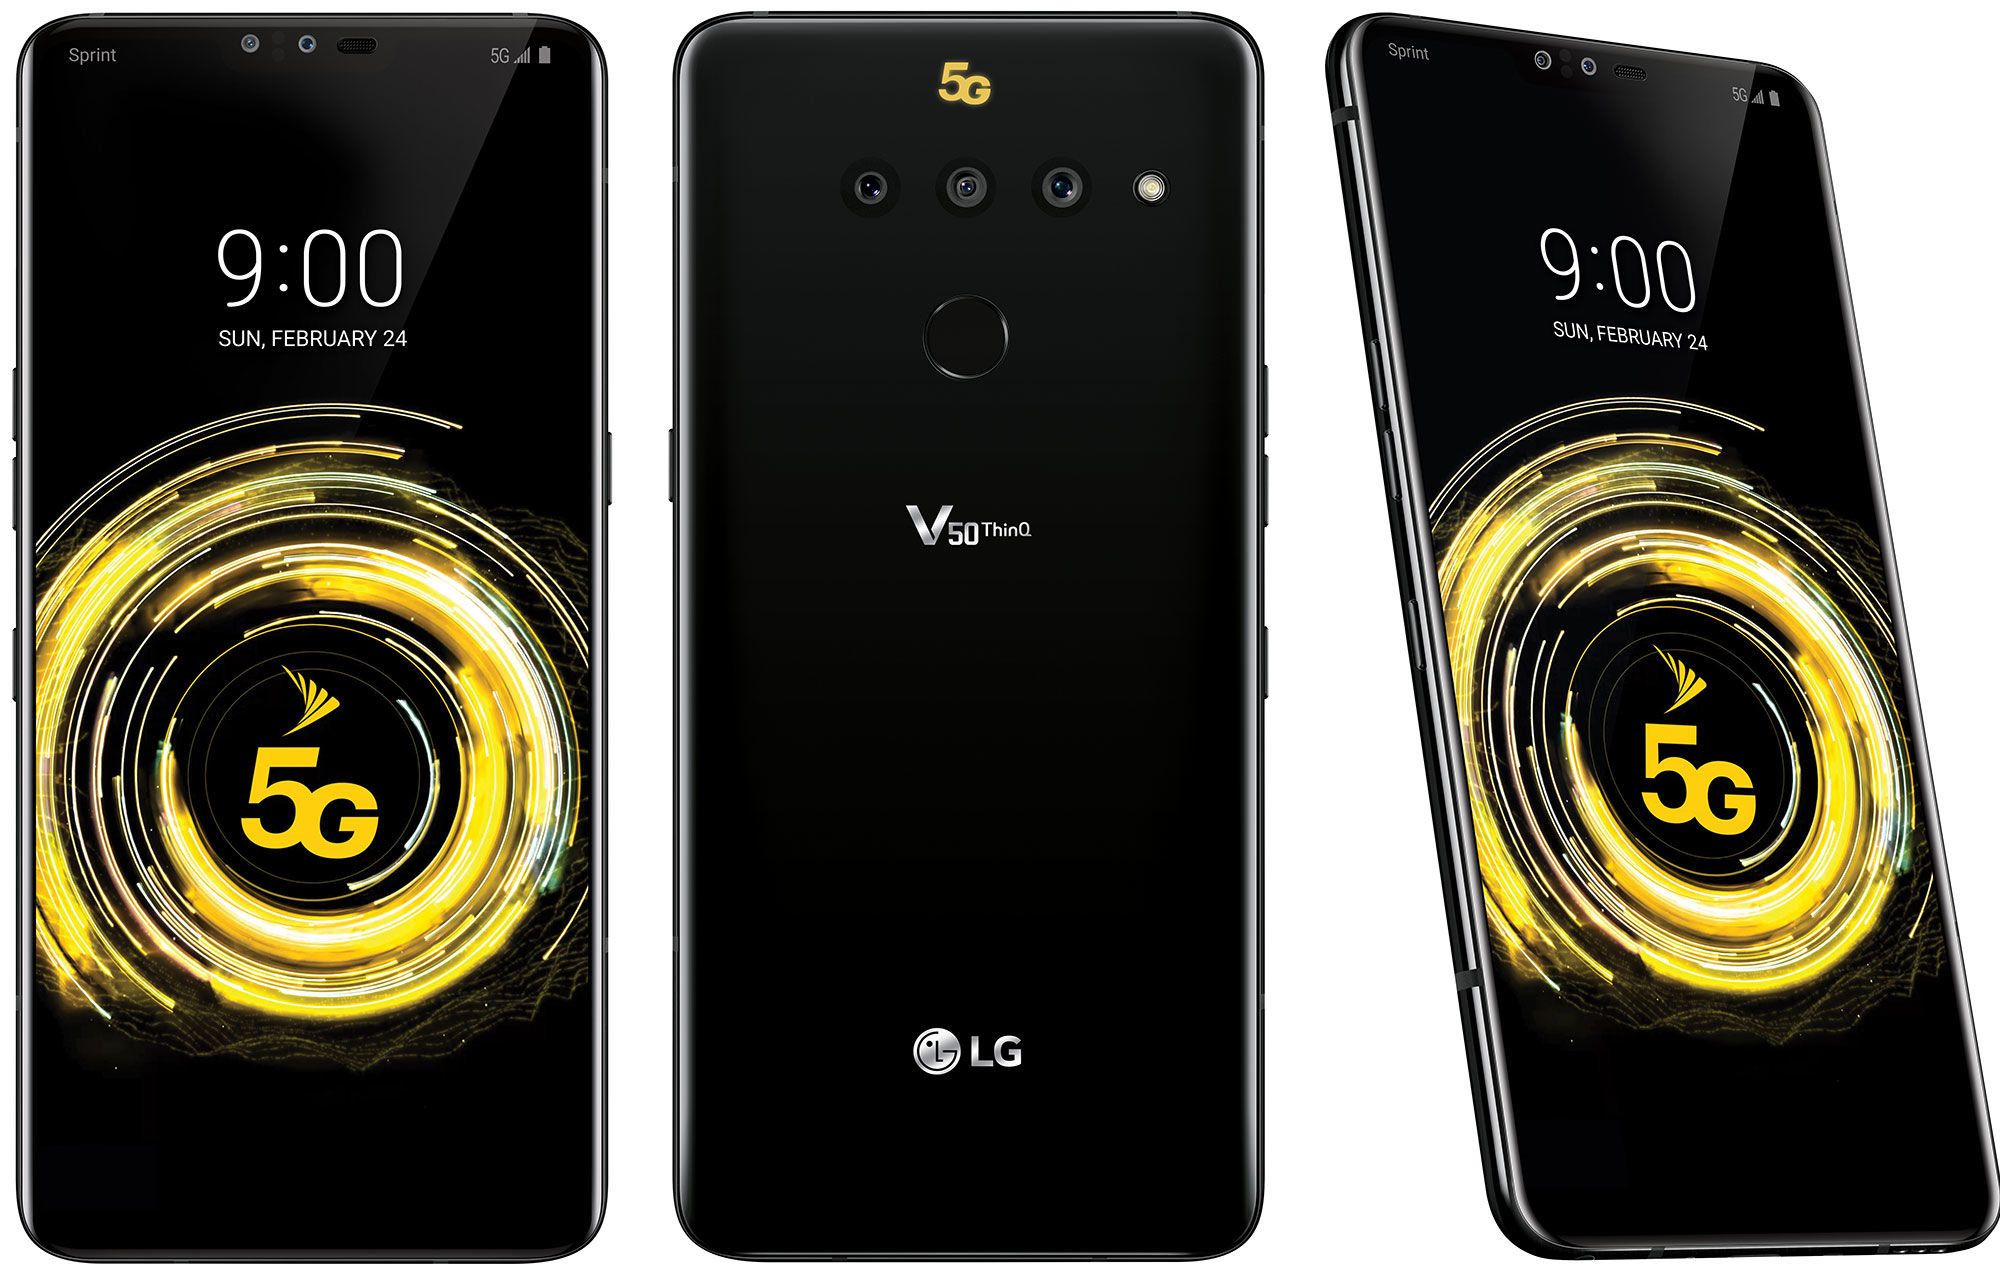 Smartphone LG V50 ThinQ 5G - fordele og ulemper